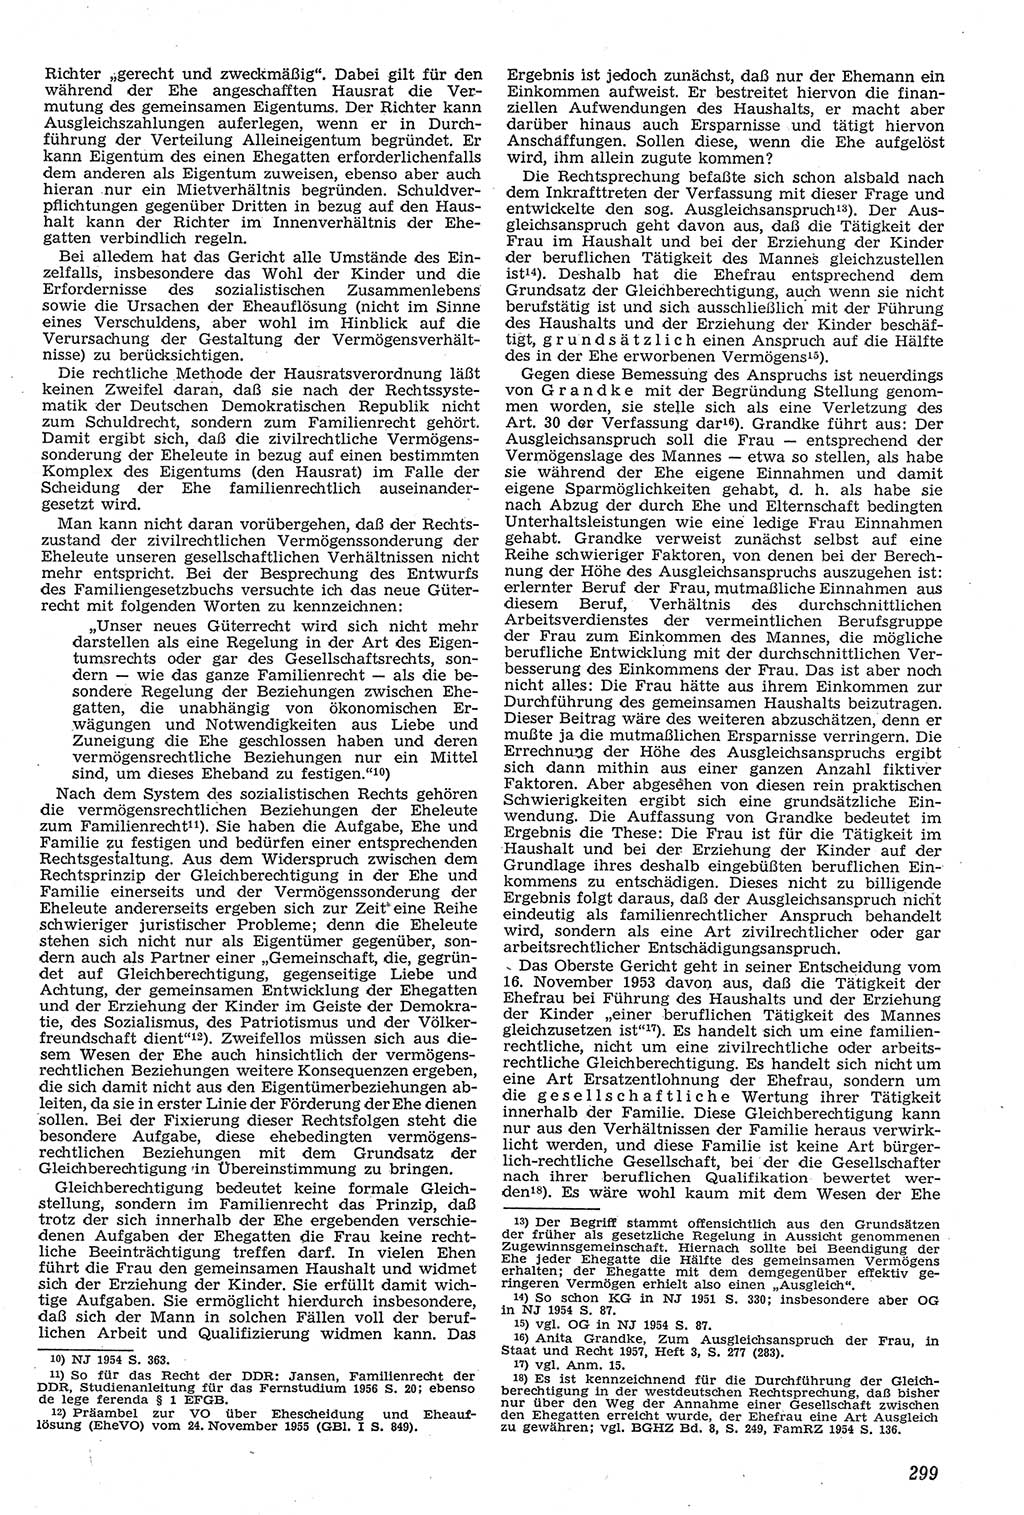 Neue Justiz (NJ), Zeitschrift für Recht und Rechtswissenschaft [Deutsche Demokratische Republik (DDR)], 11. Jahrgang 1957, Seite 299 (NJ DDR 1957, S. 299)